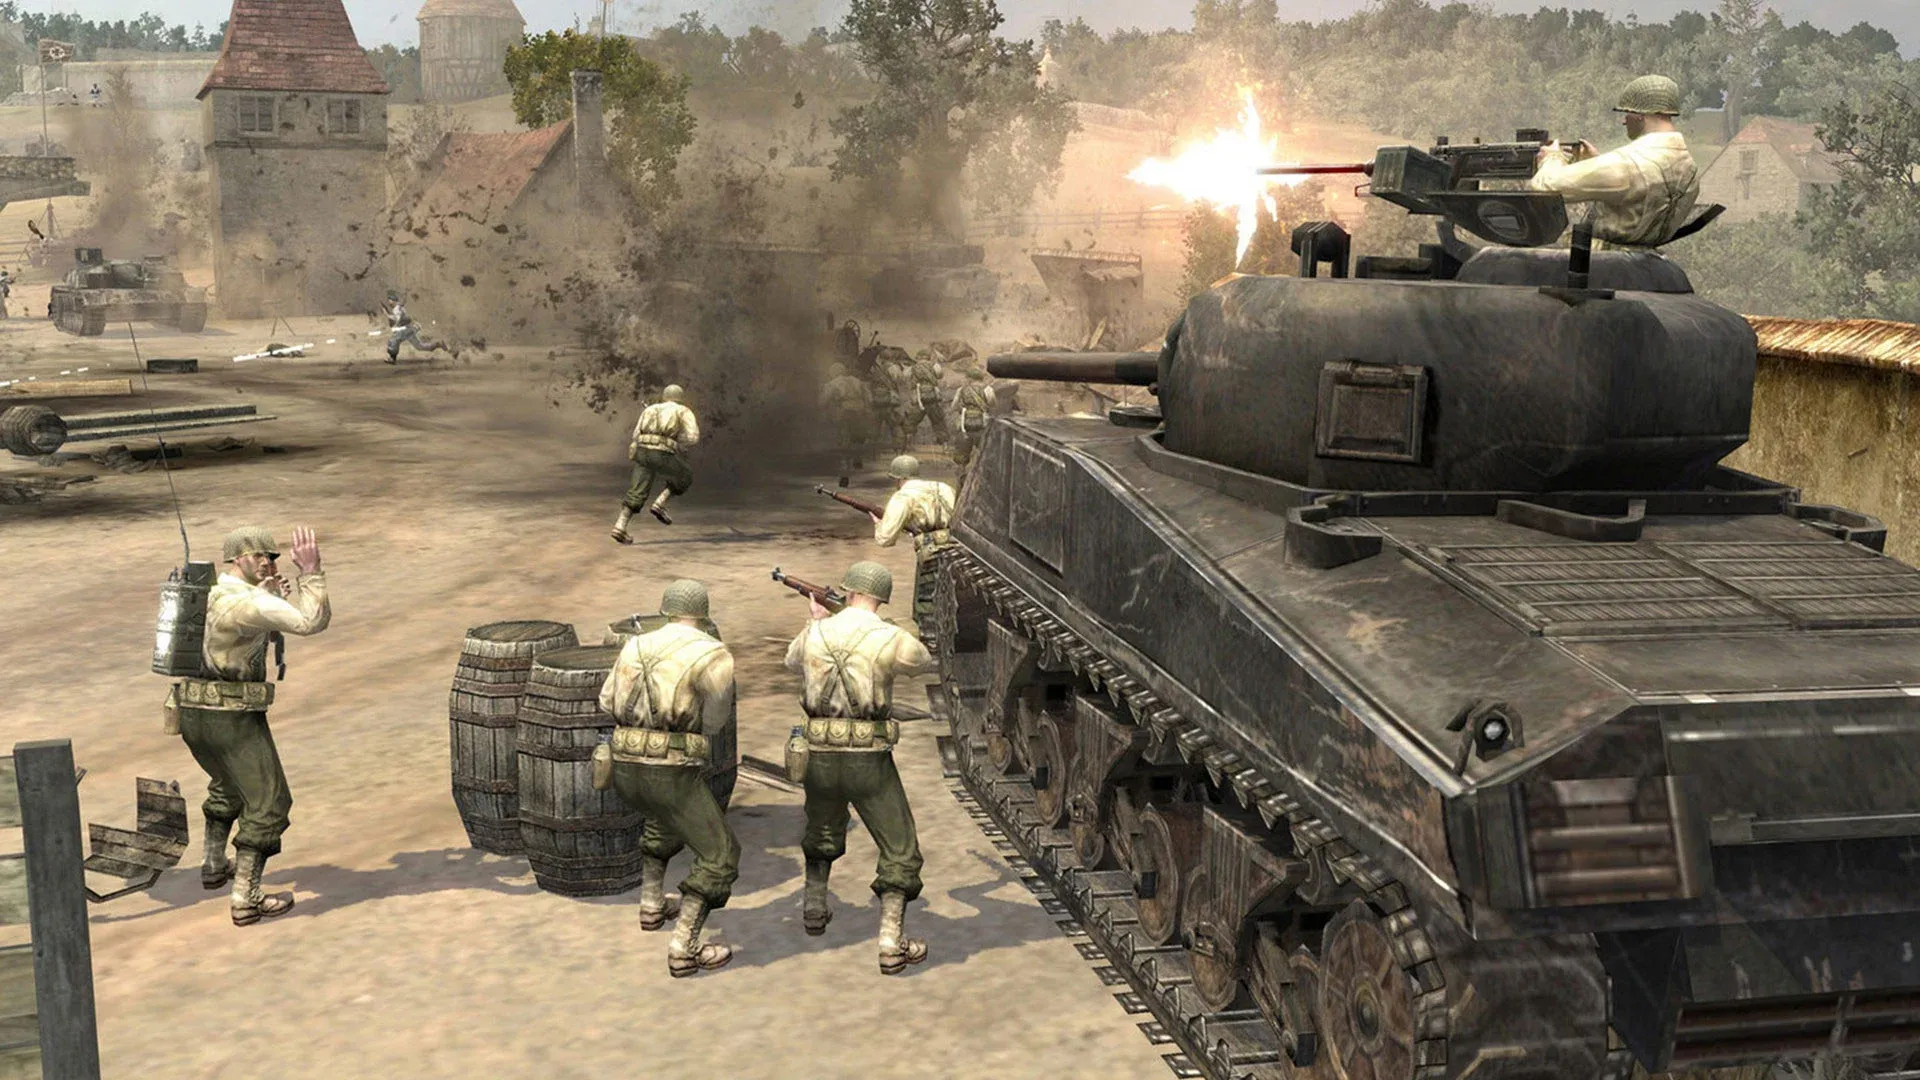 Imagem do jogo Company of Heroes com vários soldados do lado esquerdo mirando e um tanque do lado direito em meio a um campo de batalha devastado